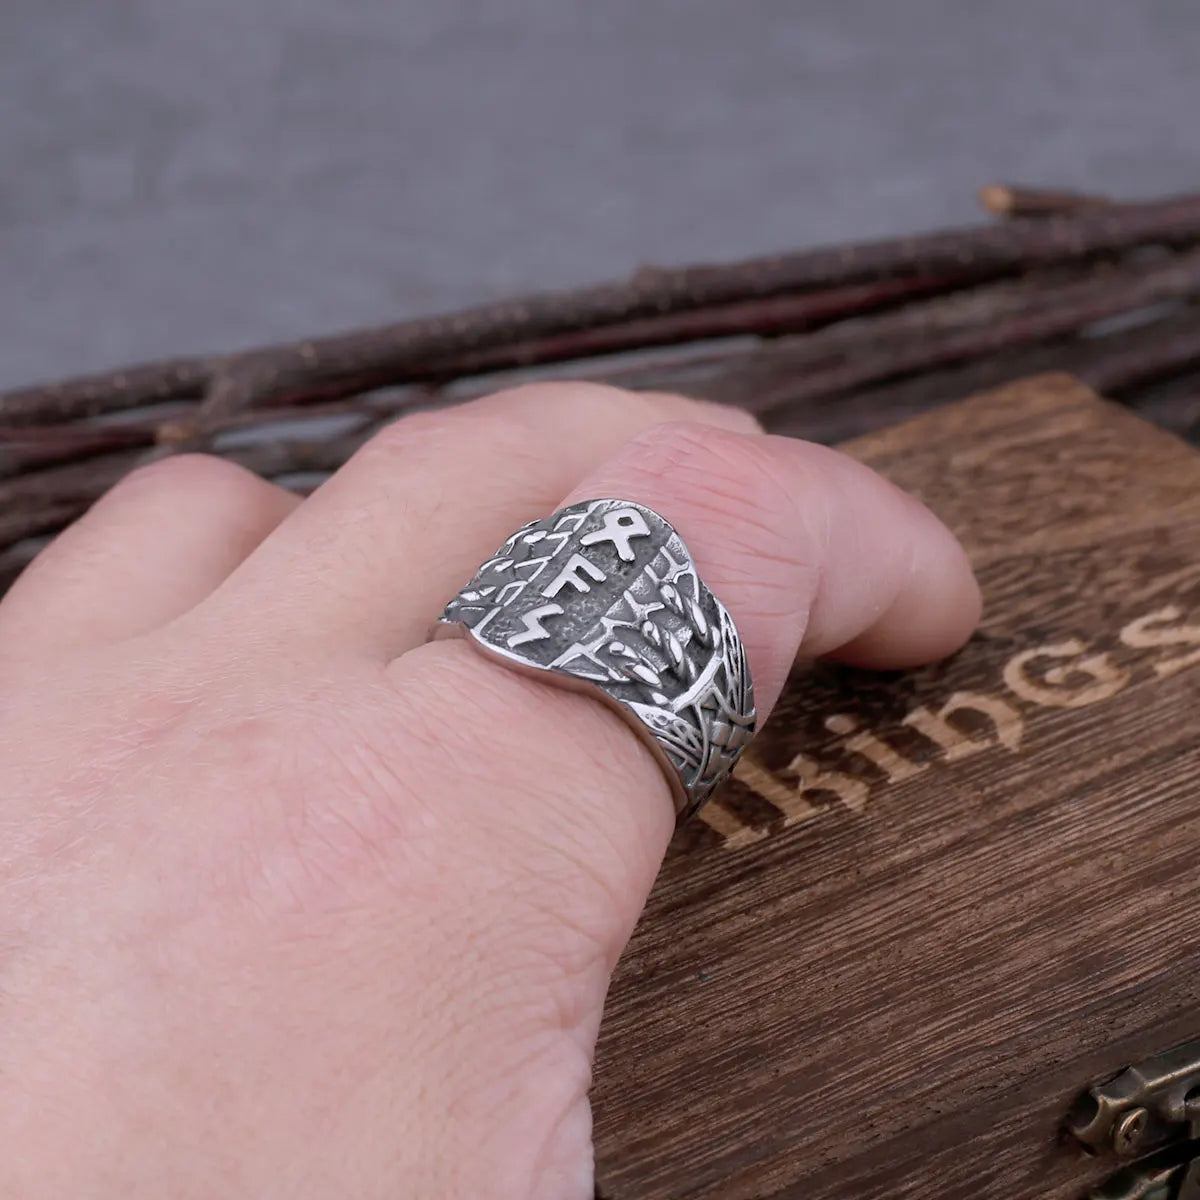 New Stainless Steel Virgin Odin Rune Ring